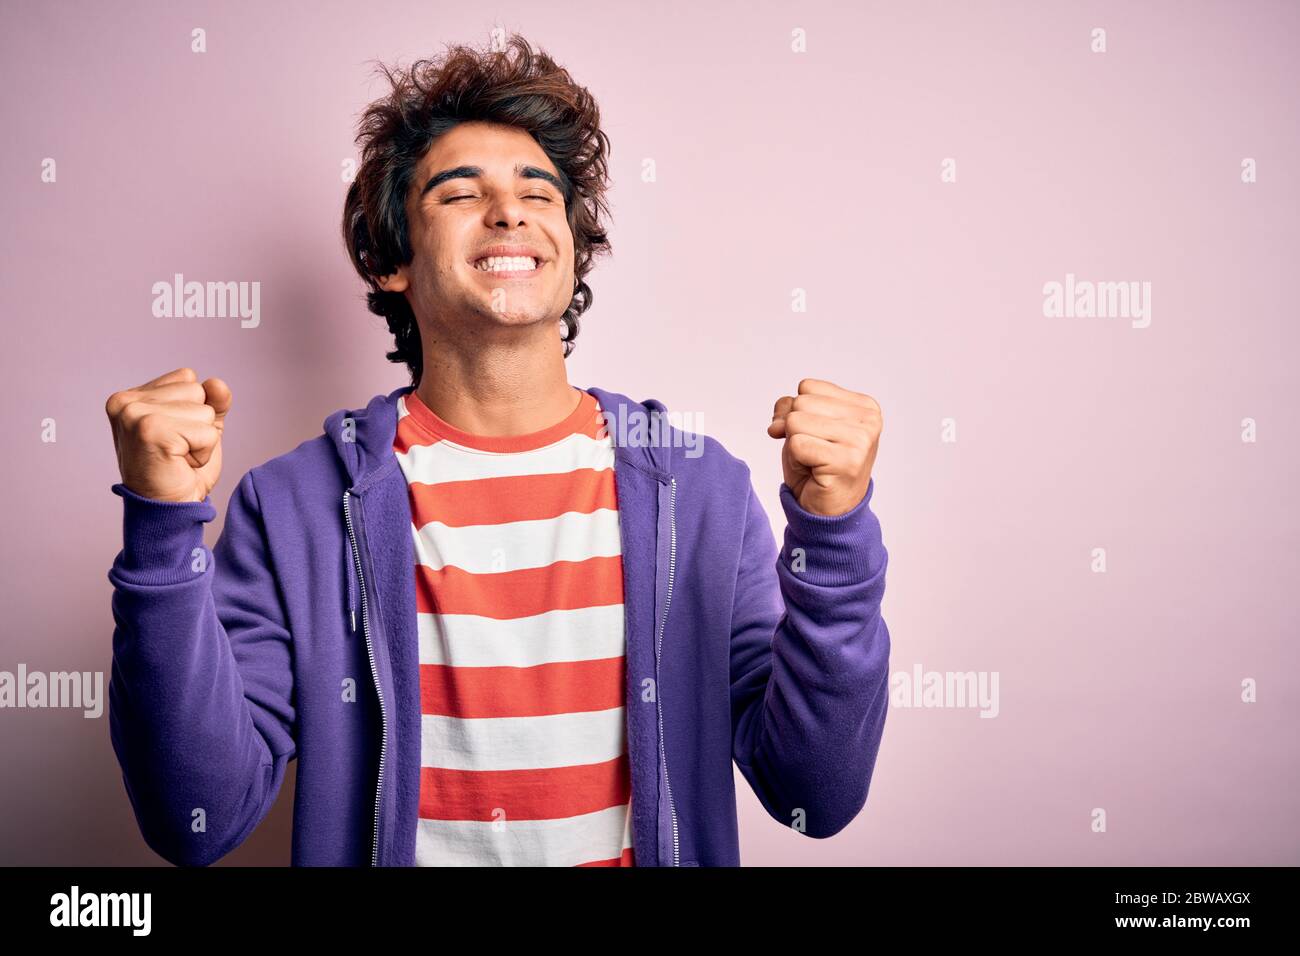 Jeune homme portant un t-shirt rayé et un sweat-shirt violet sur fond rose isolé très heureux et excité faisant le geste gagnant avec les bras levés, smi Banque D'Images